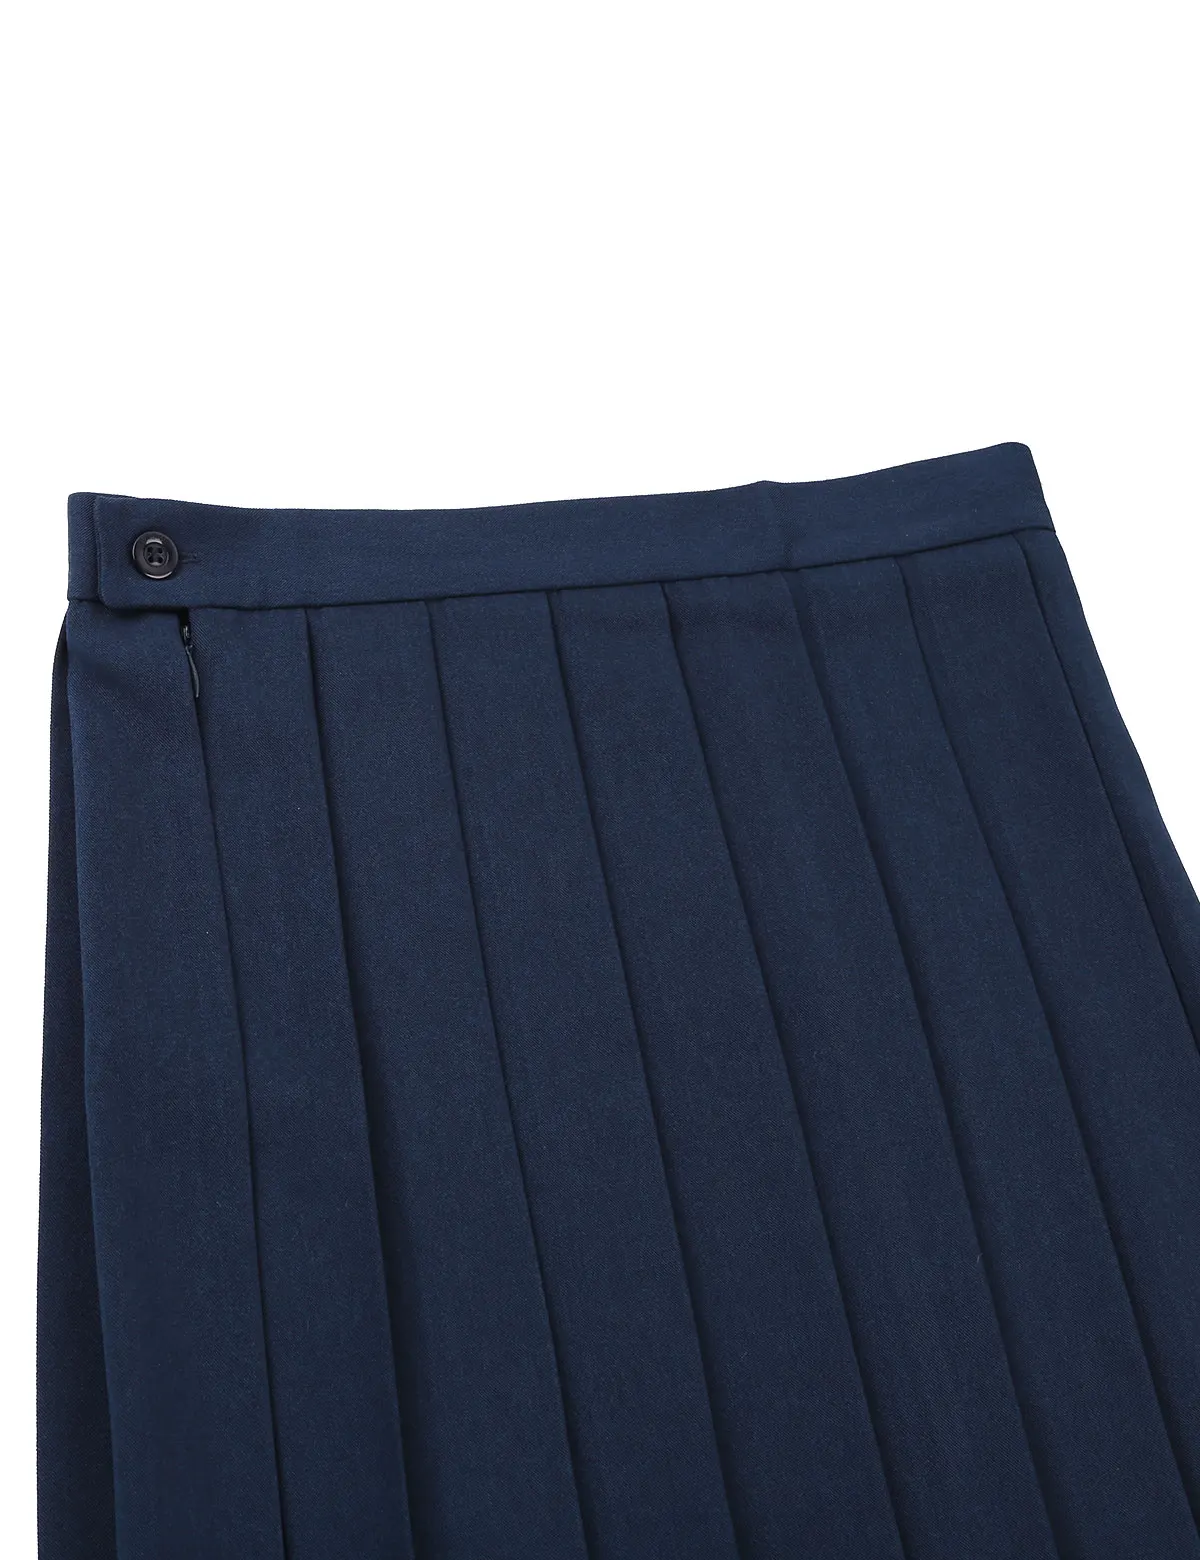 Harajuku плюс размер короткая юбка новая Корейская клетчатая юбка женская на молнии, с завышенной талией школьная плиссированная юбка для девочек Сексуальная клетчатая мини-юбка